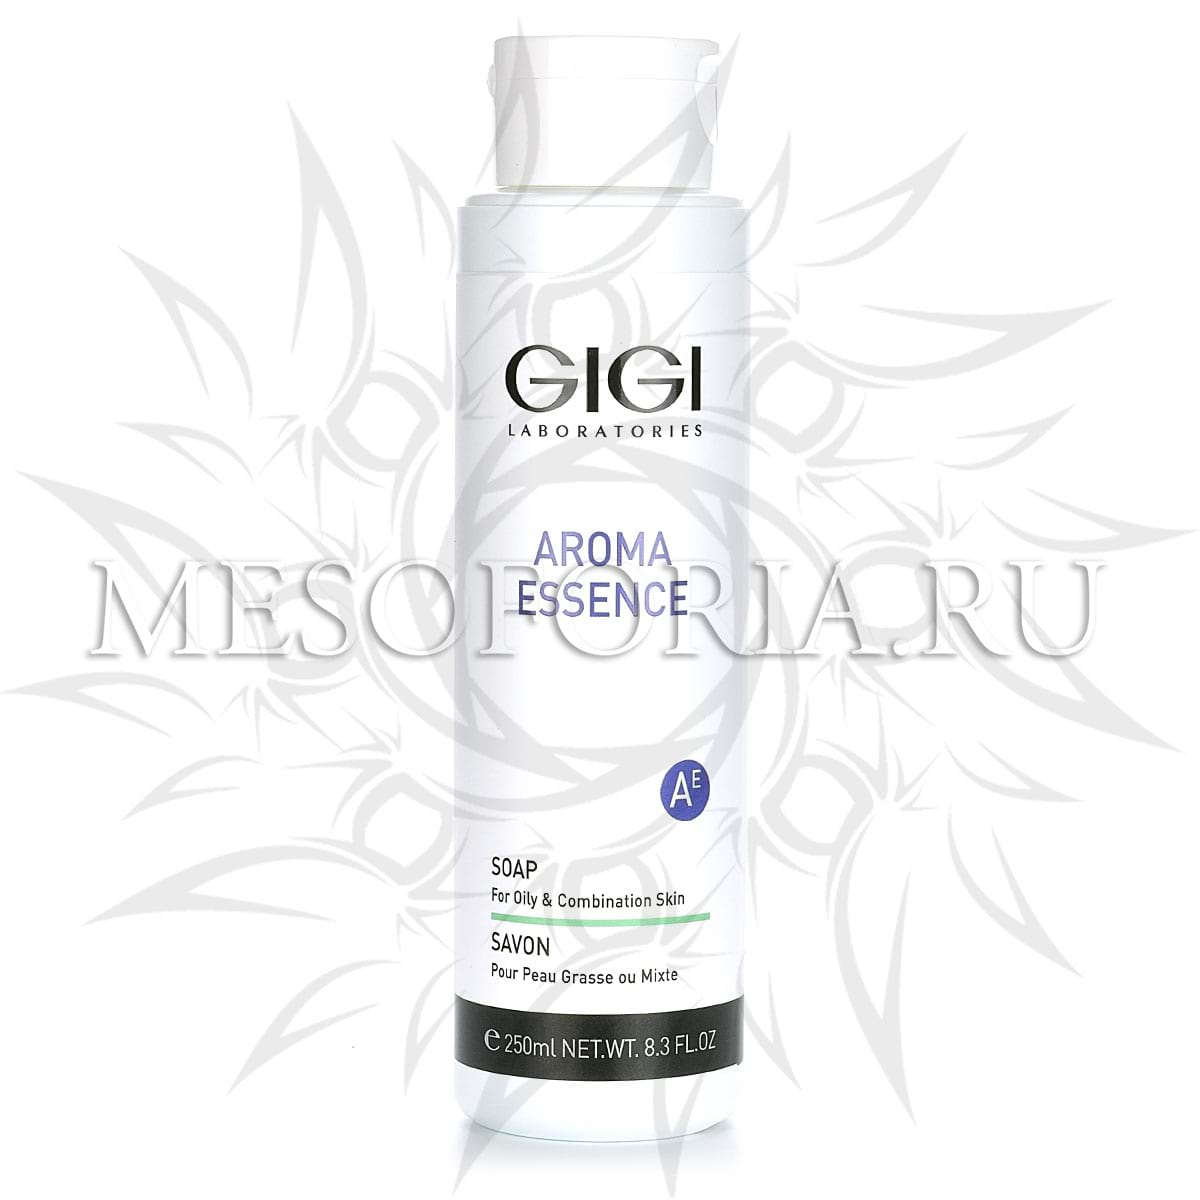 Мыло для комбинированной и жирной кожи / Soap for oily skin, Aroma Essence, GiGi (Джи Джи) – 250 мл